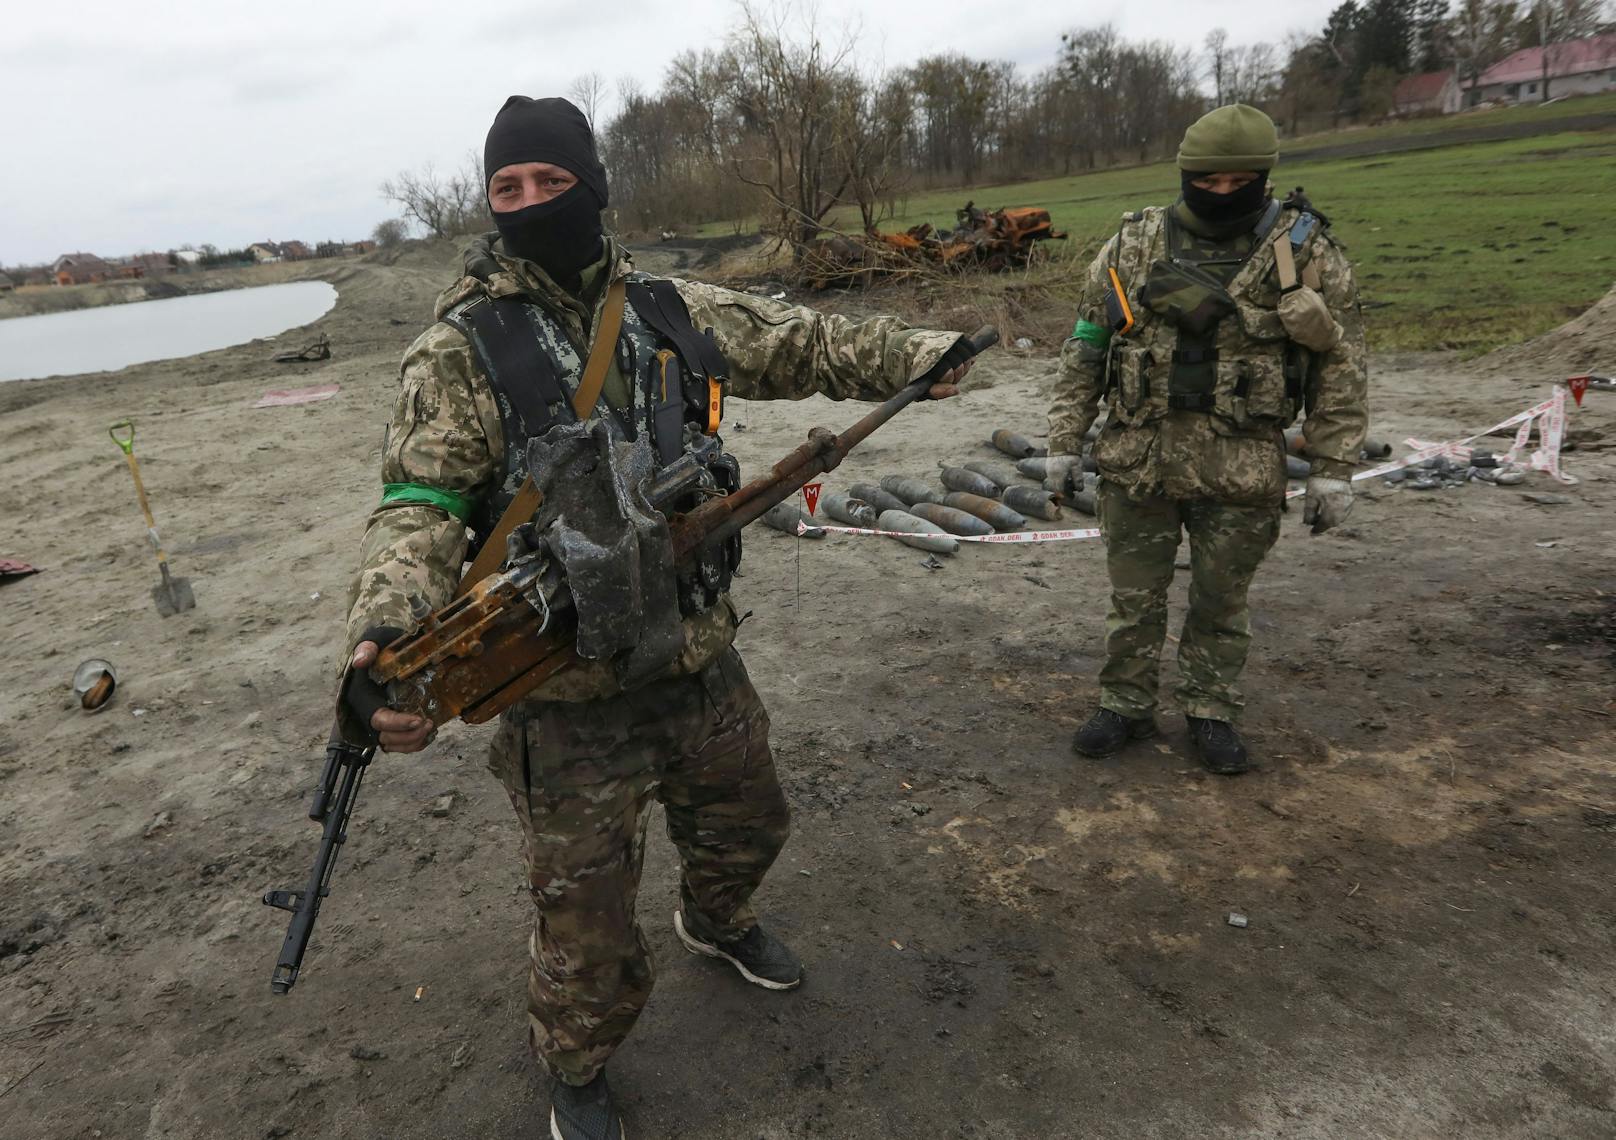 Der Gouverneur des Gebiets Luhansk rechnet mit einer bevorstehenden Offensive der Russen im Osten der Ukraine. "Es ist eine Frage von Tagen", sagte Serhij Hajdaj gegenüber dem "Corriere della Sera".